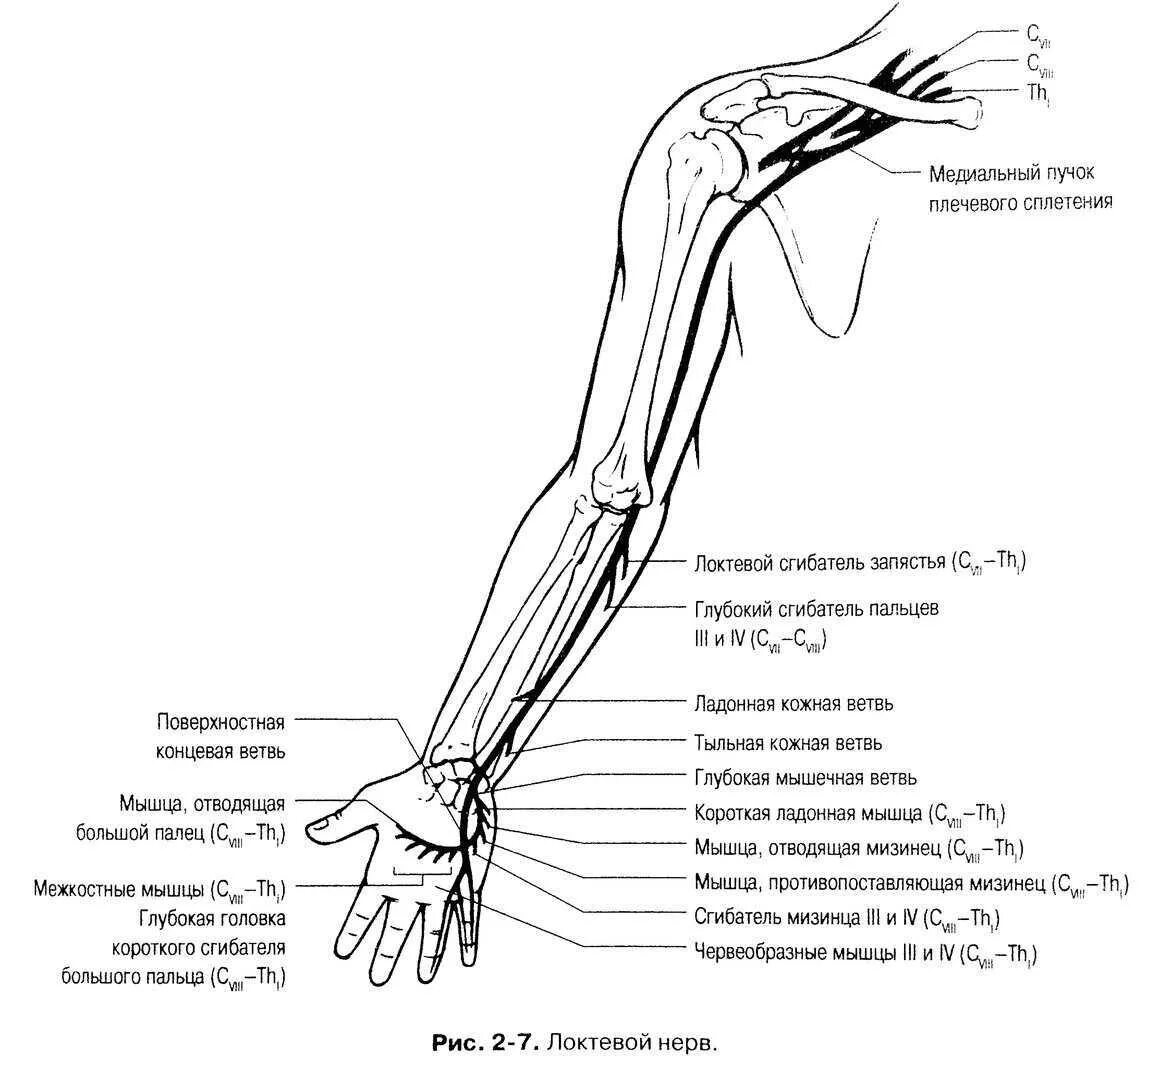 Нервная система правой руки человека анатомия. Срединный нерв анатомия схема. Иннервация верхней конечности схема. Локтевой нерв анатомия топография.